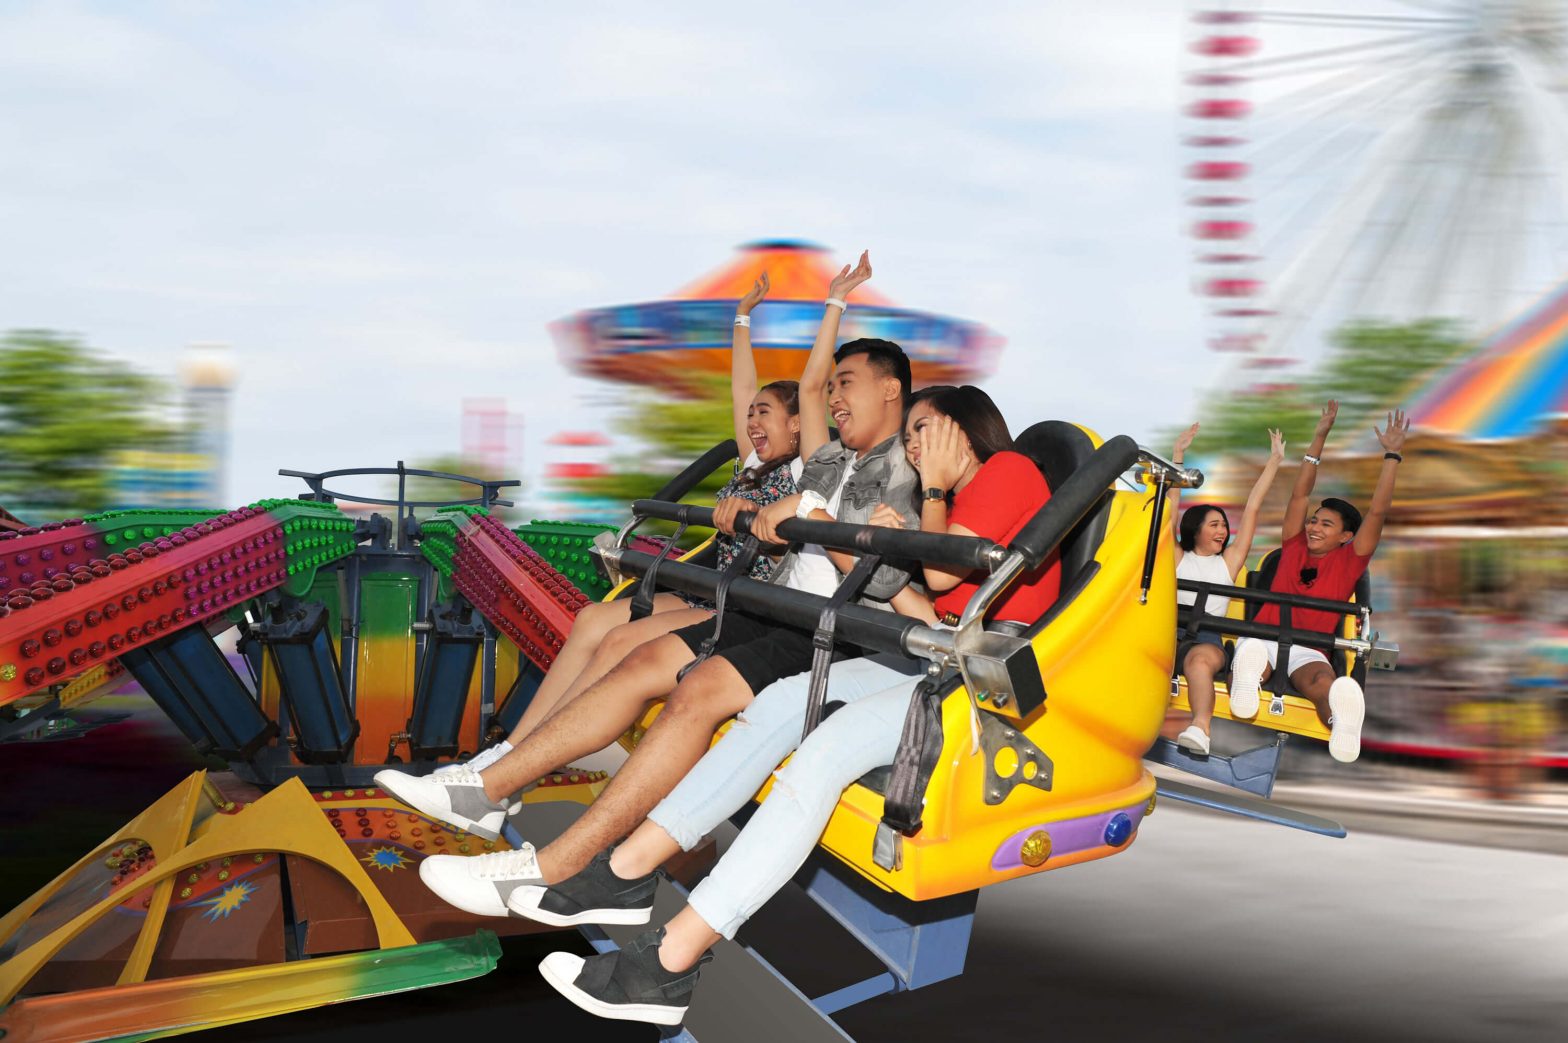 Anjo World theme park opens in Minglanilla today